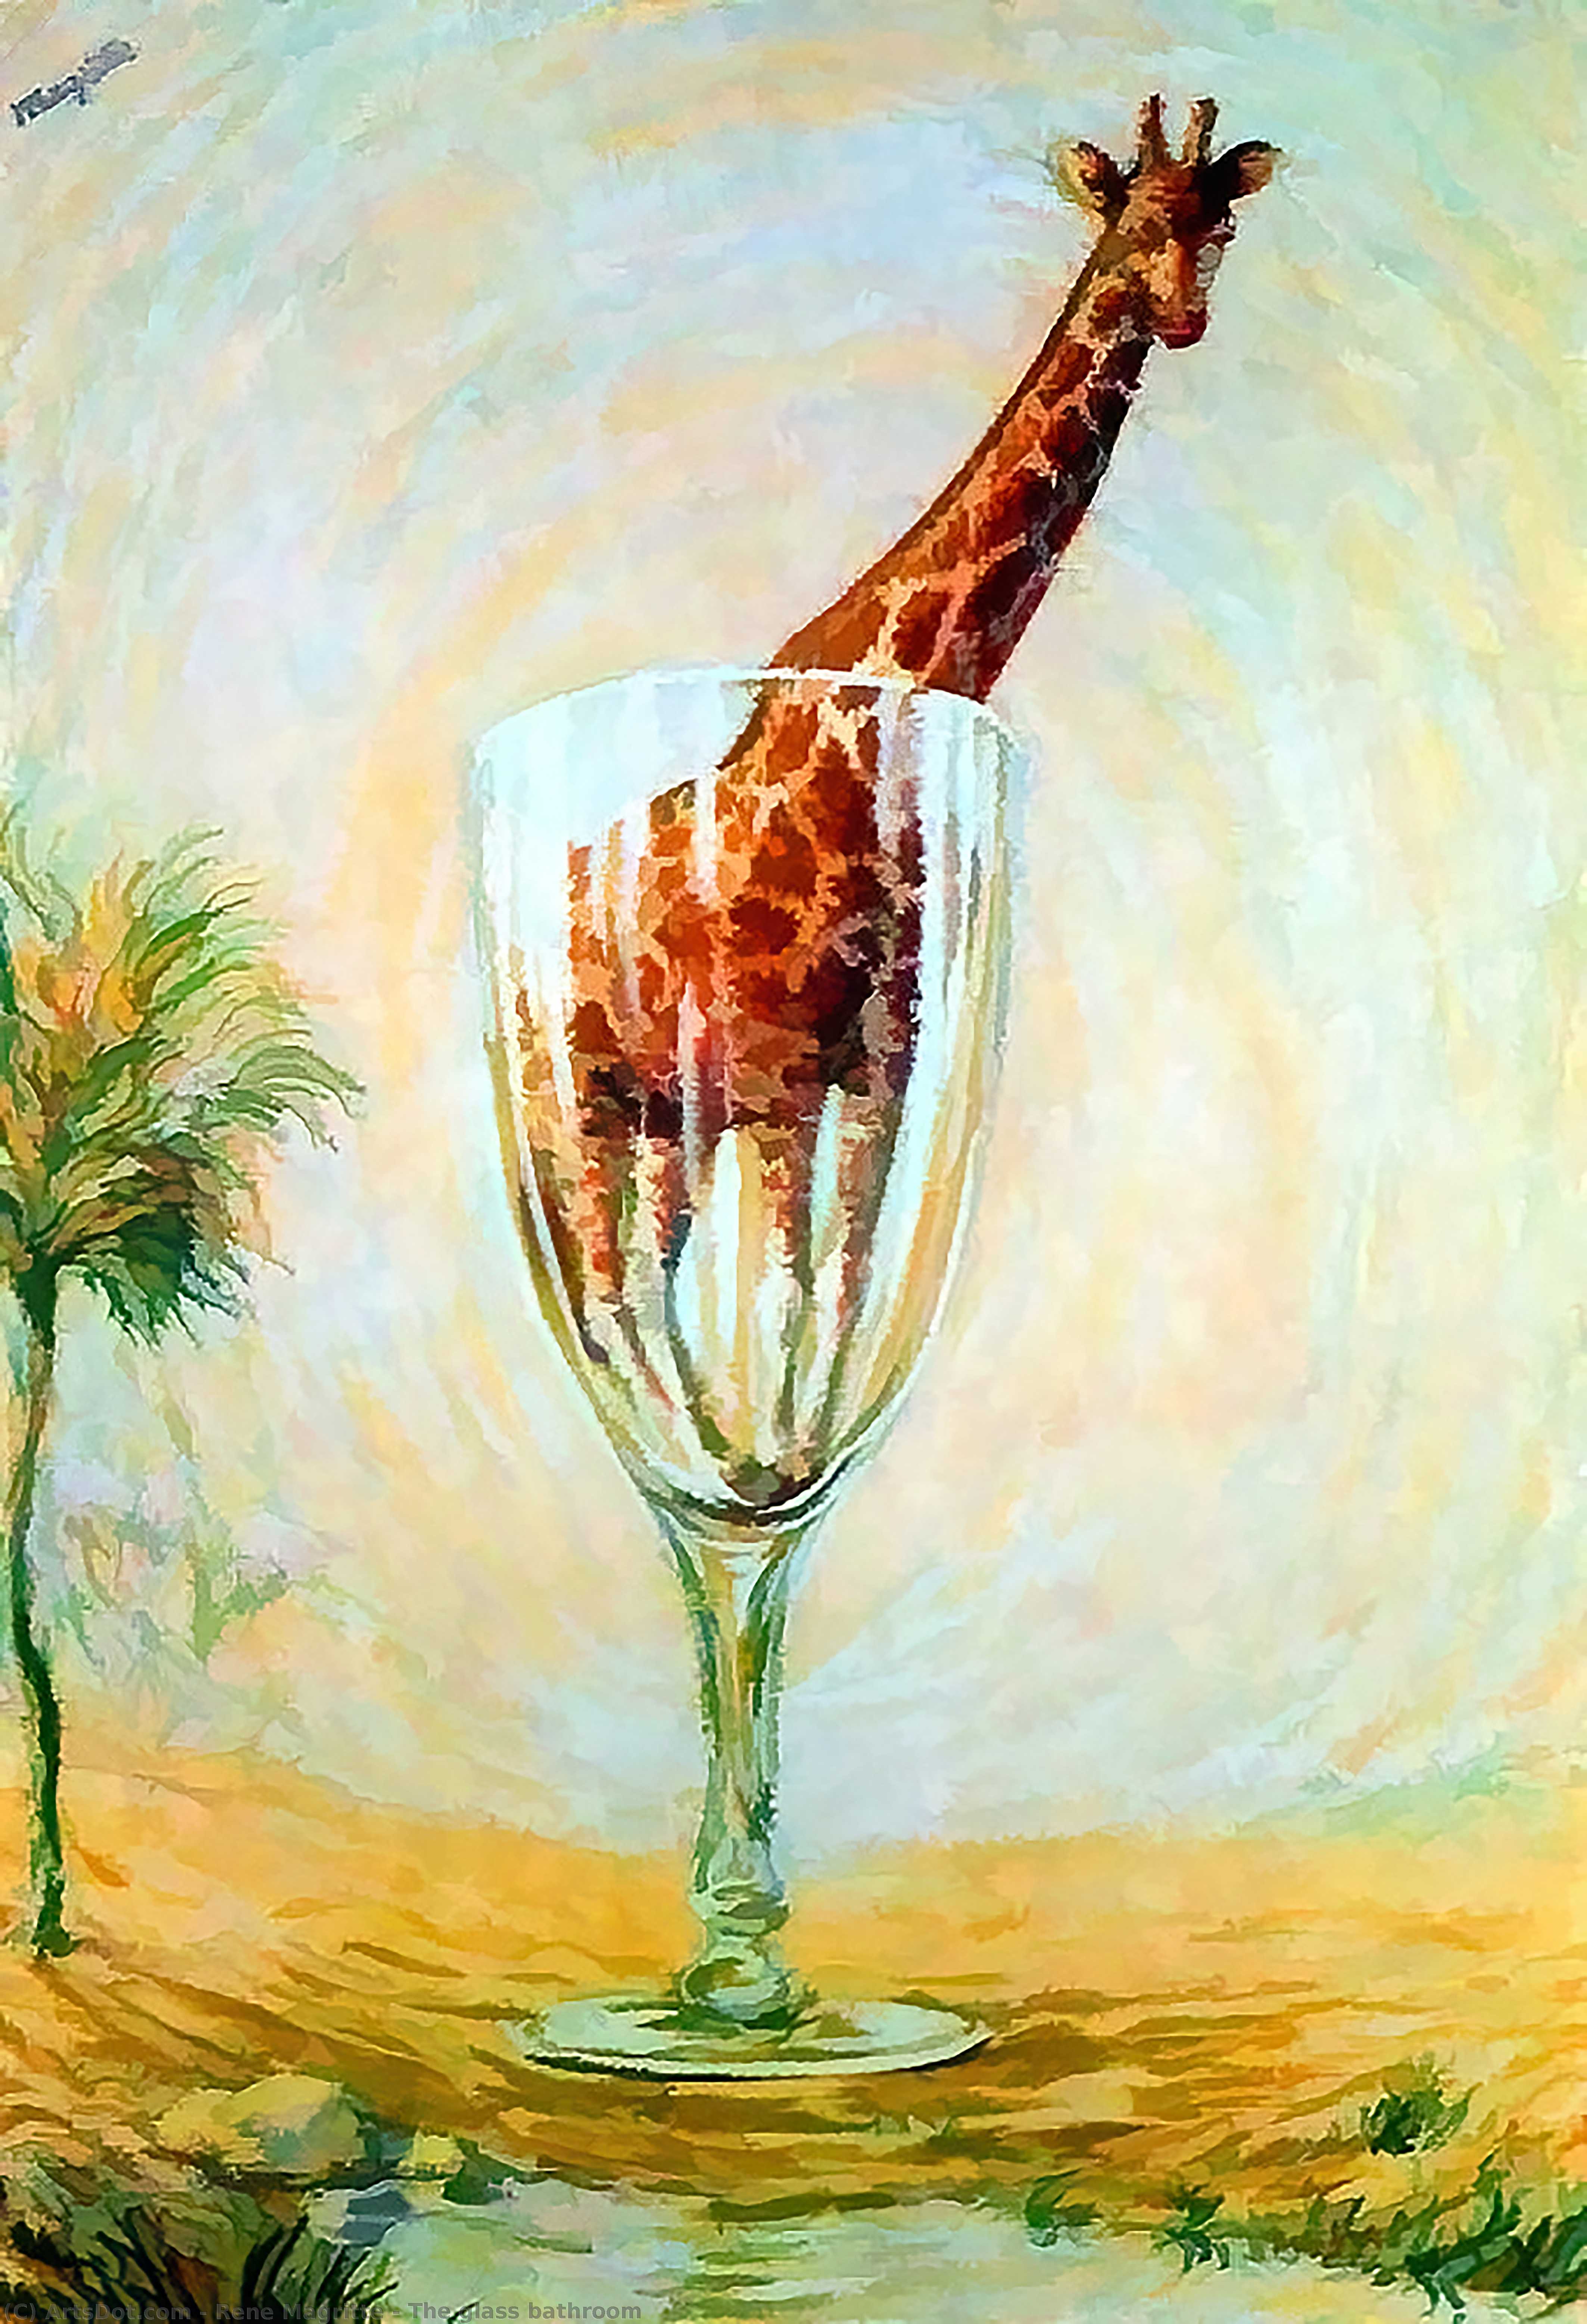 Wikioo.org - Bách khoa toàn thư về mỹ thuật - Vẽ tranh, Tác phẩm nghệ thuật Rene Magritte - The glass bathroom